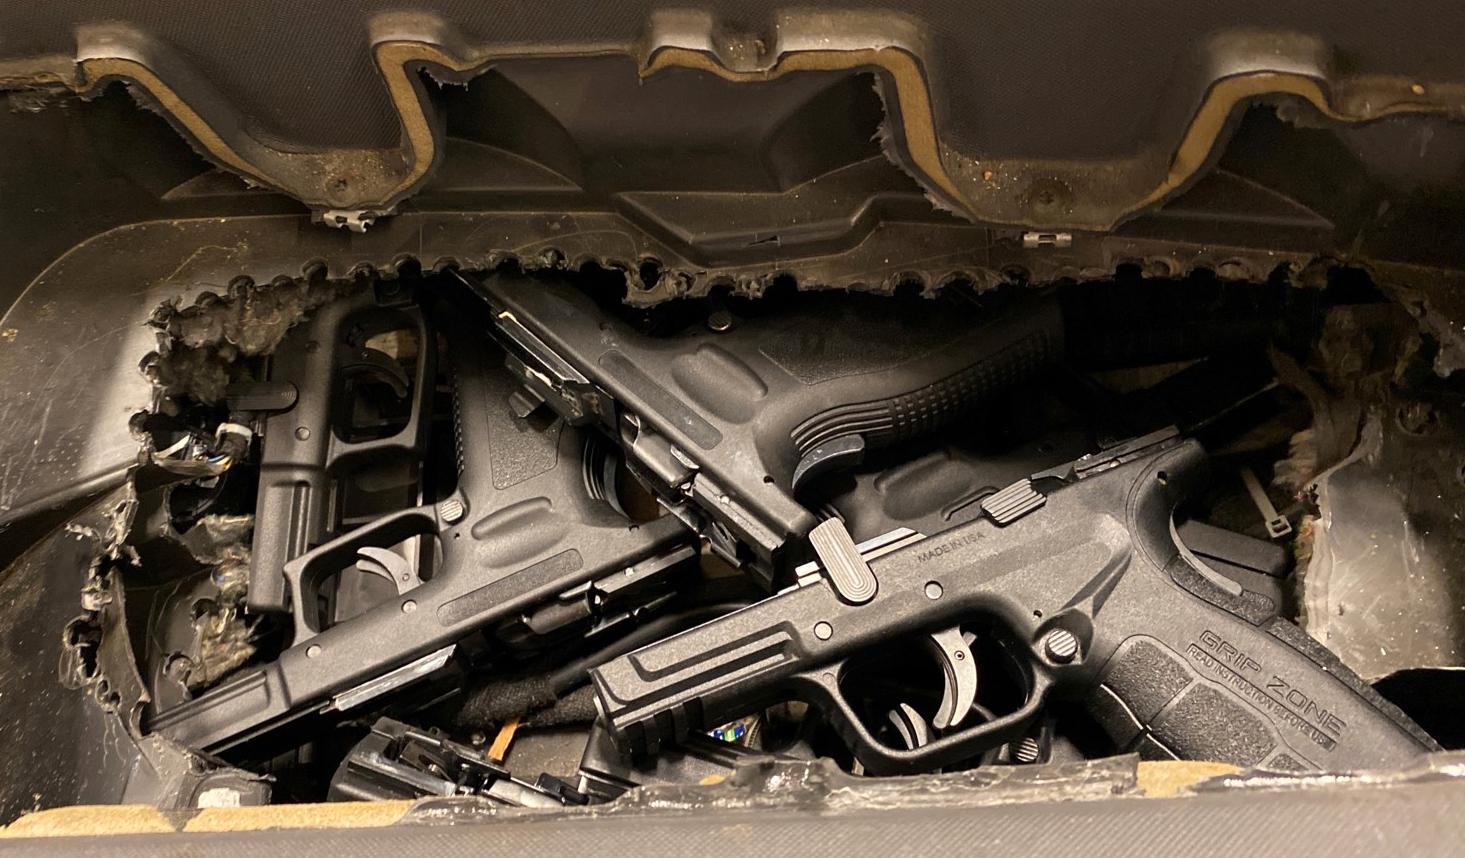 Ett belgiskt par åtalas för att ha försökt smuggla in 15 skarpa vapen till Sverige.